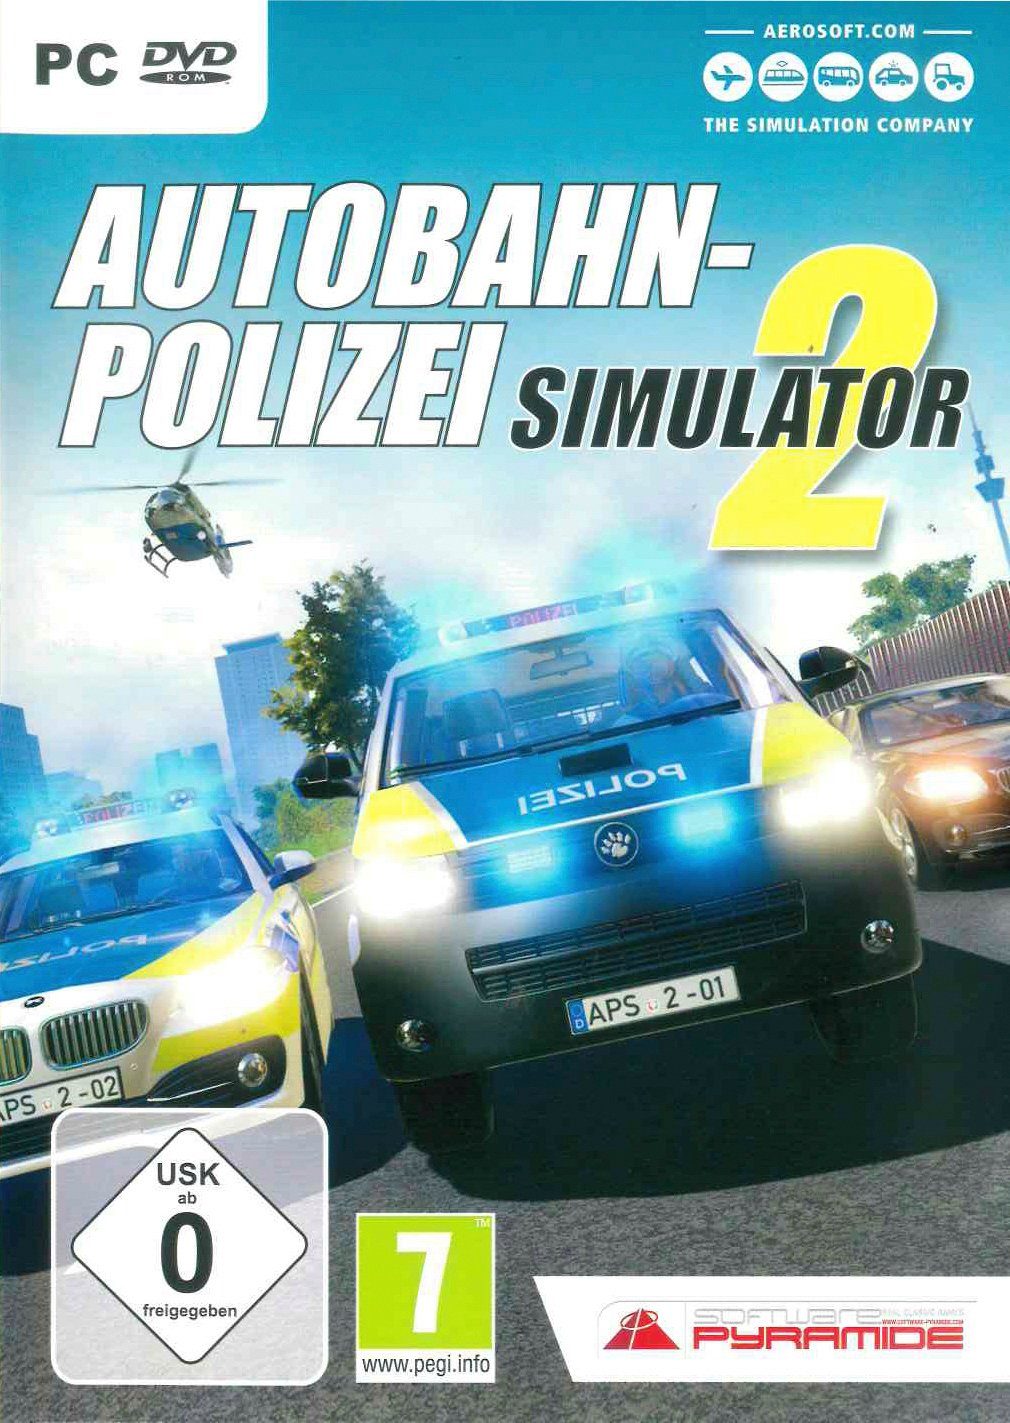 Simulator PC 2 Autobahn-Polizei